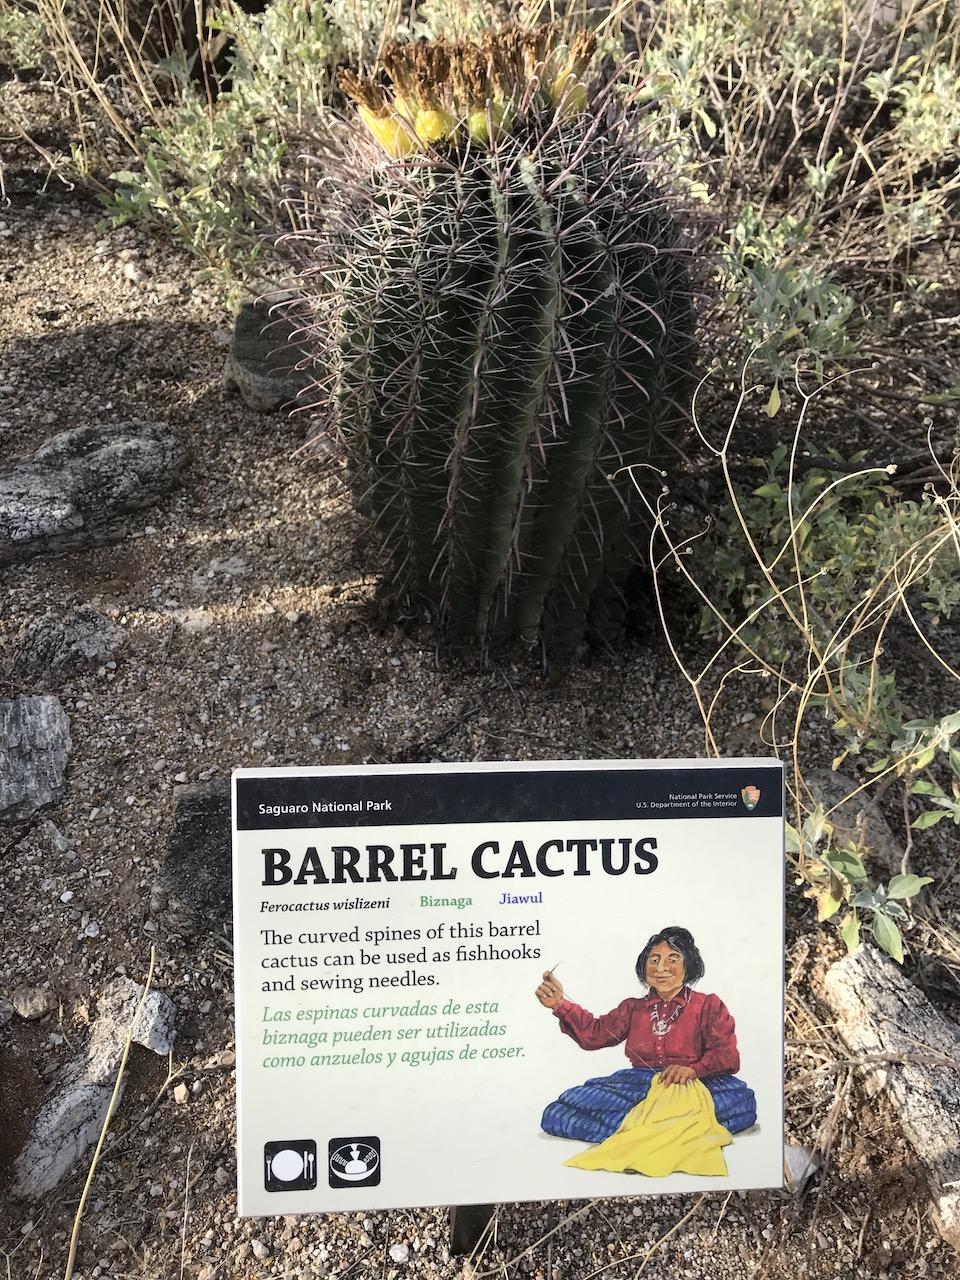 Barrel cactus, Ethobotany Garden, Saguaro National Park/Kurt Repanshek